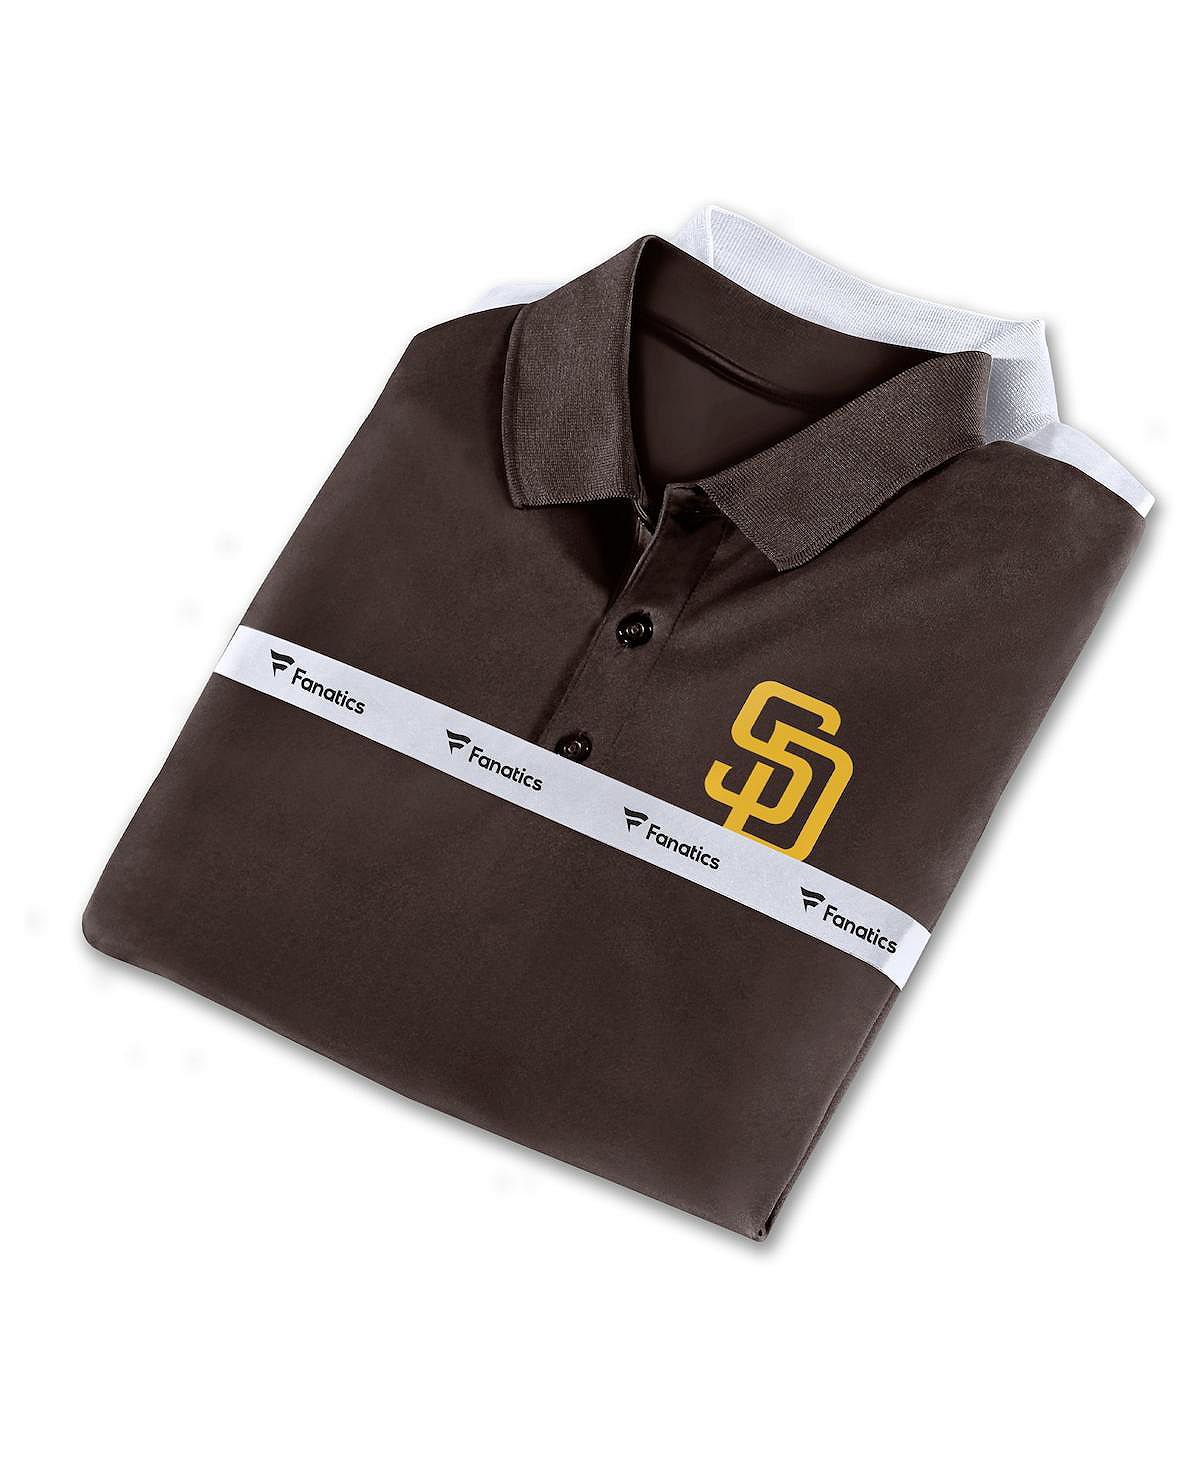 Мужской фирменный коричнево-белый комбинированный комплект с рубашкой поло San Diego Padres Fanatics umbro diego pocket